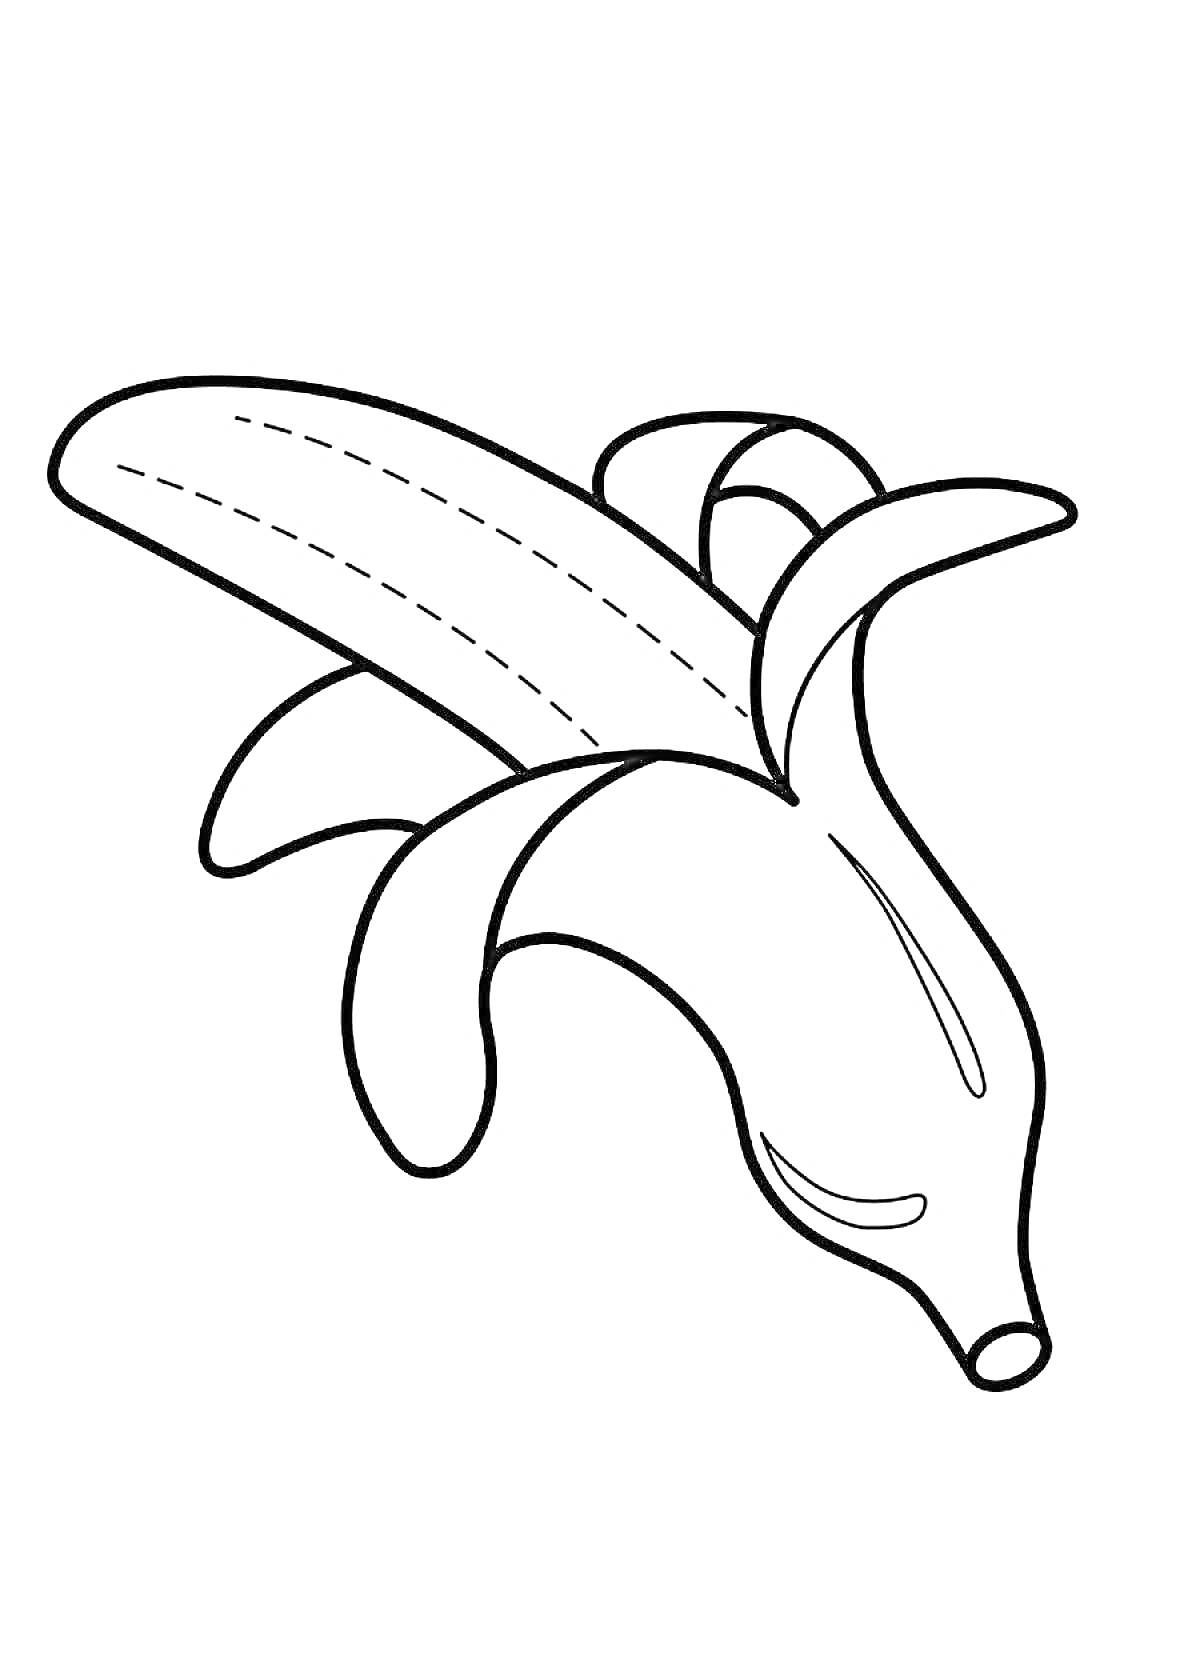 РаскраскаРаскрытый банан